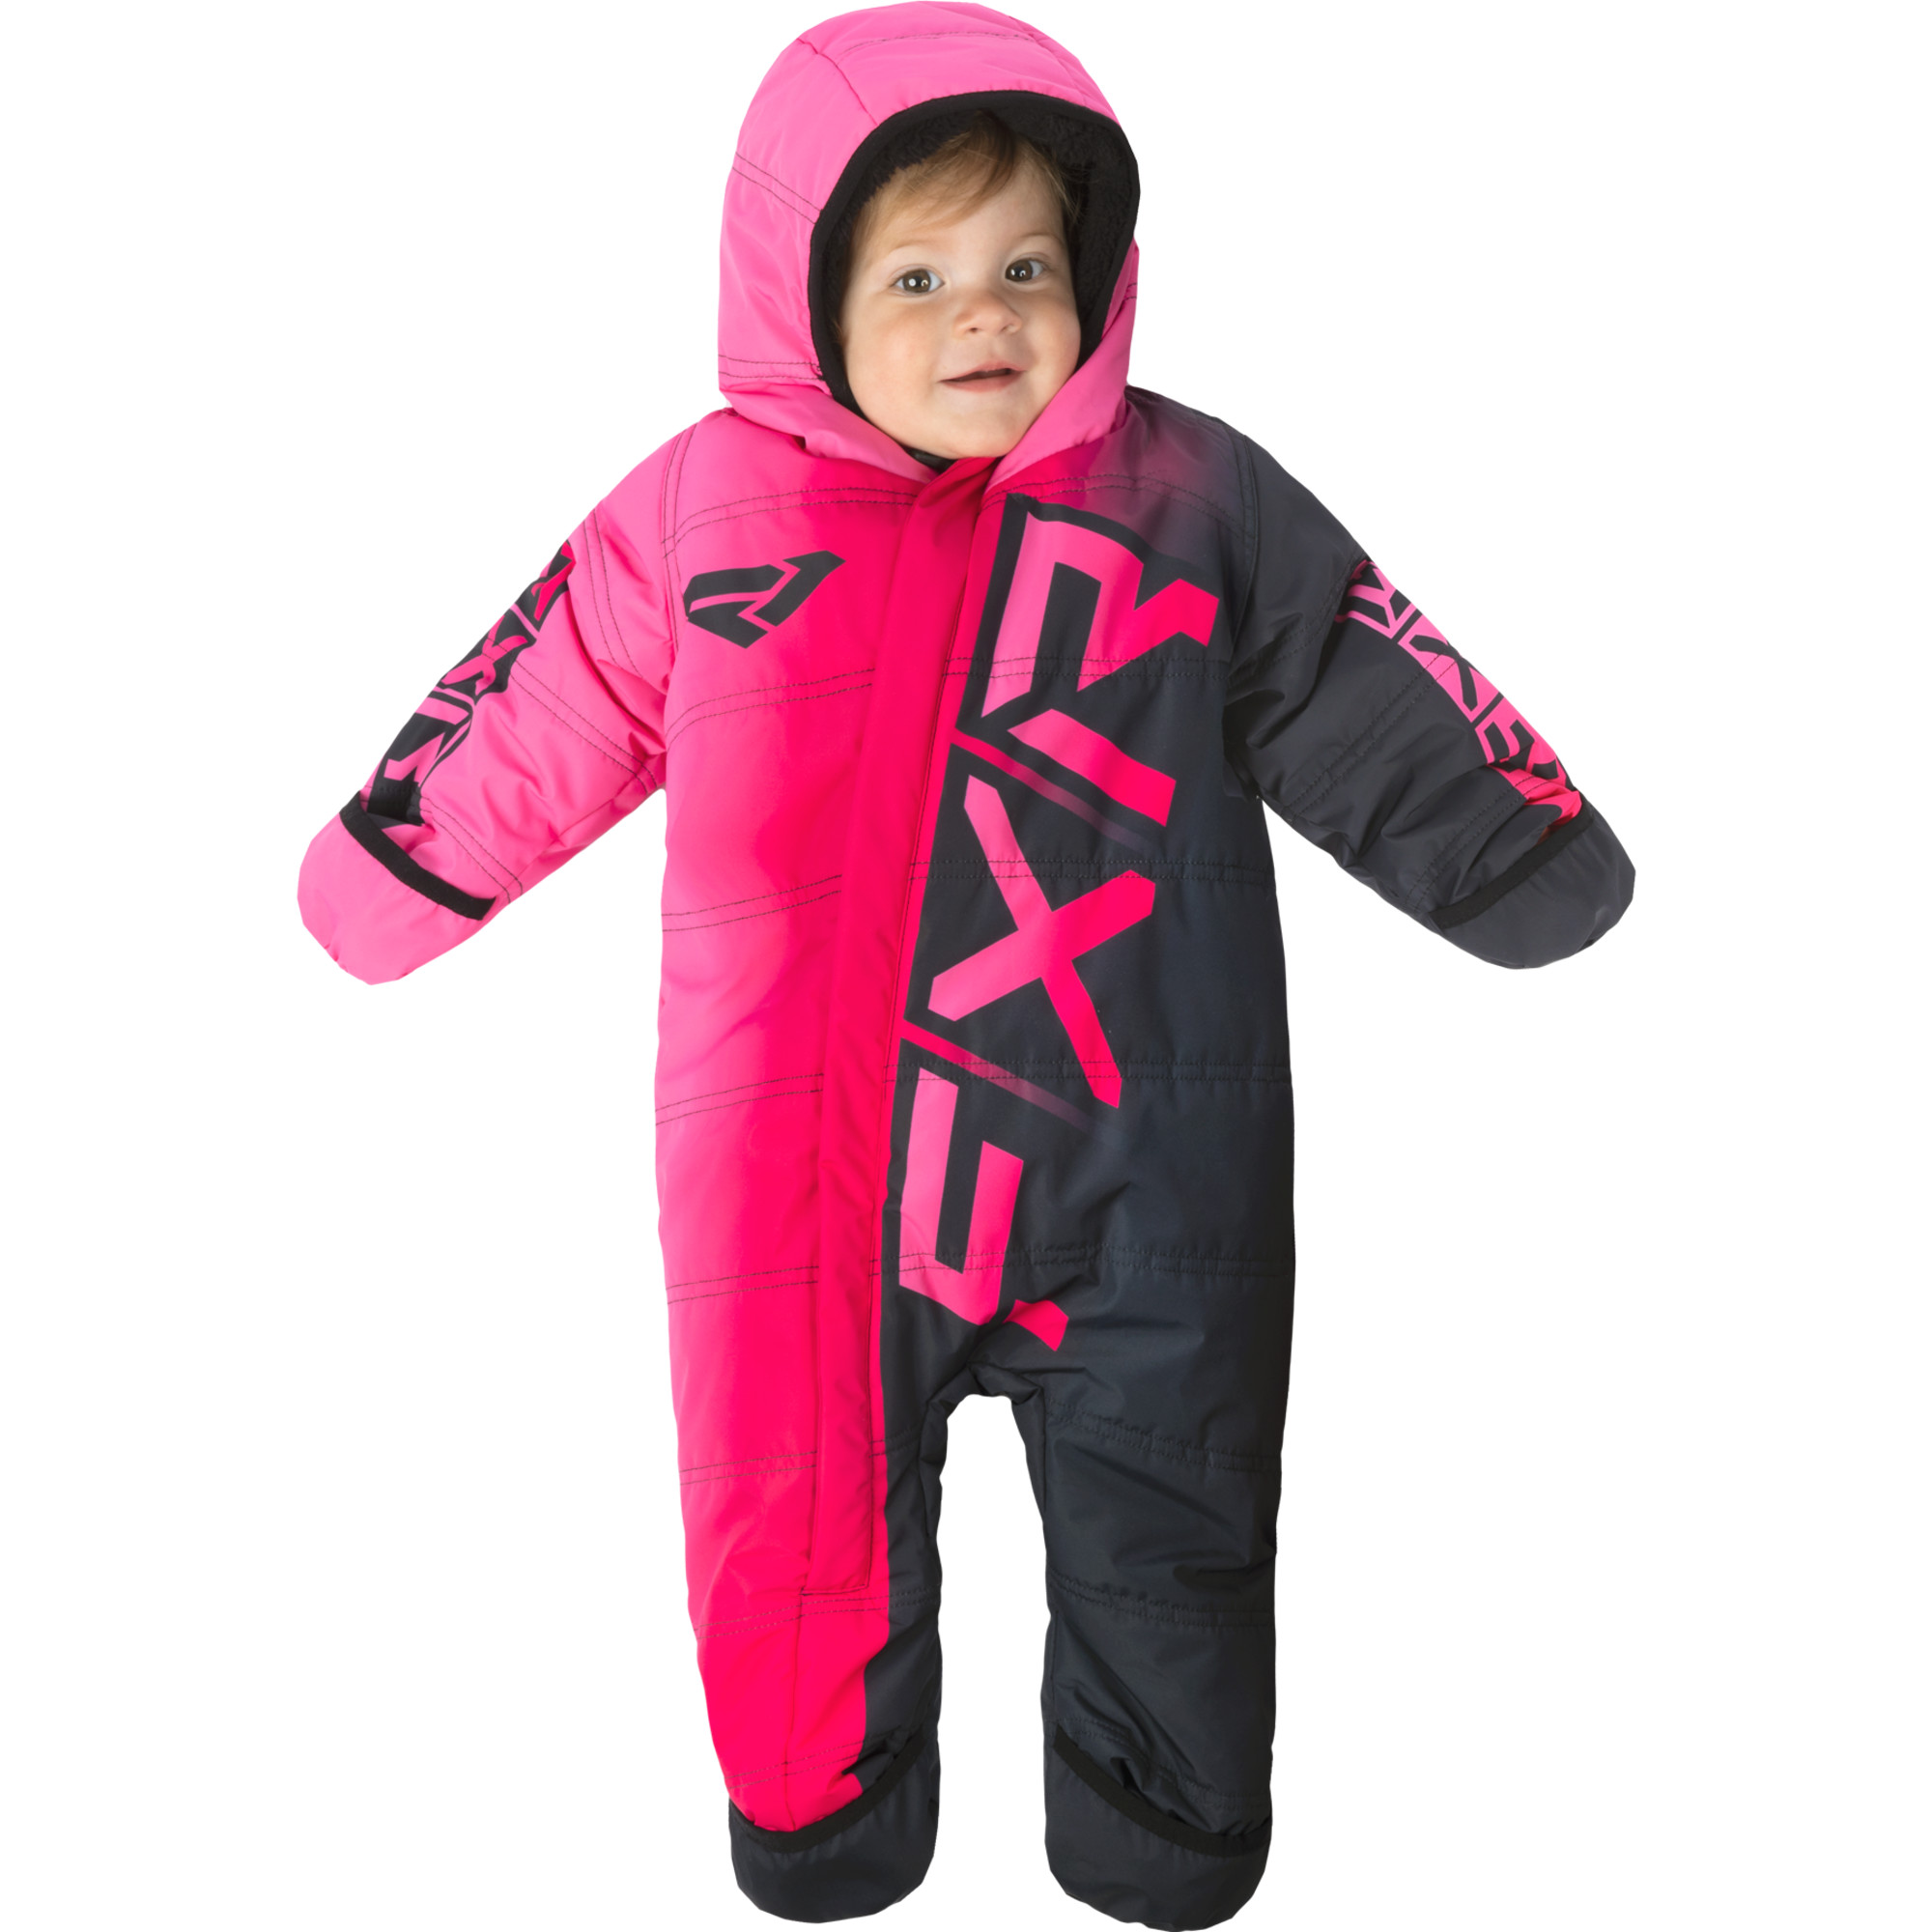  youth infant cx snowsuit